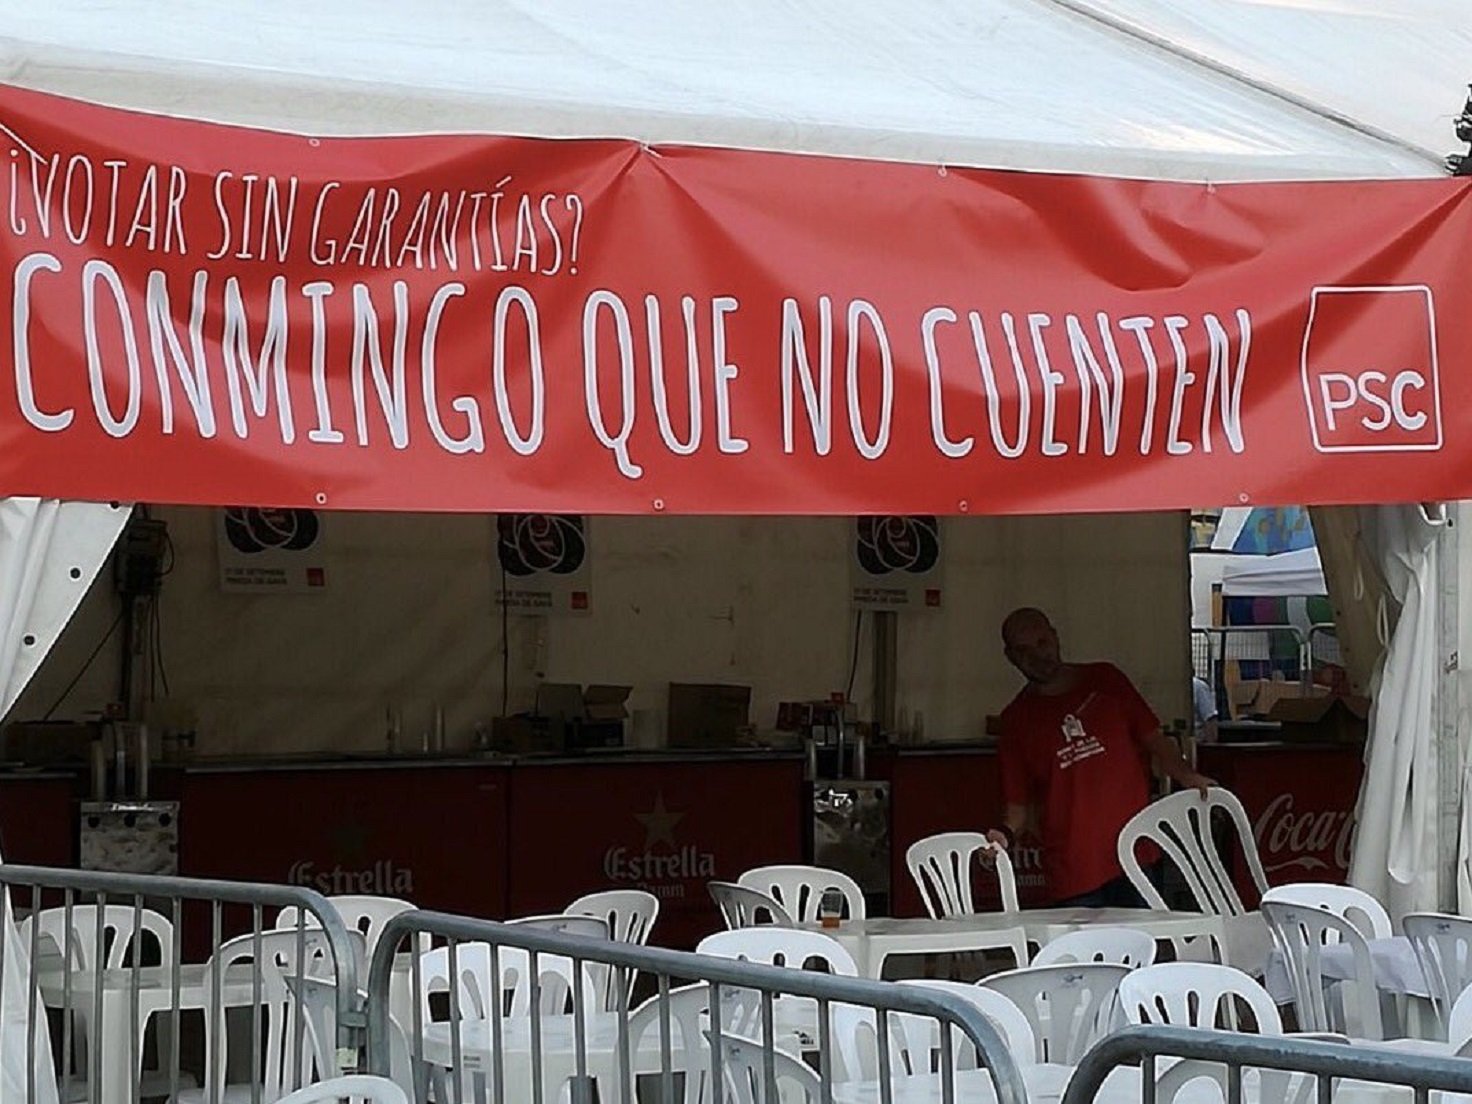 La xarxa es riu de l'error del PSC en un cartell contra el referèndum